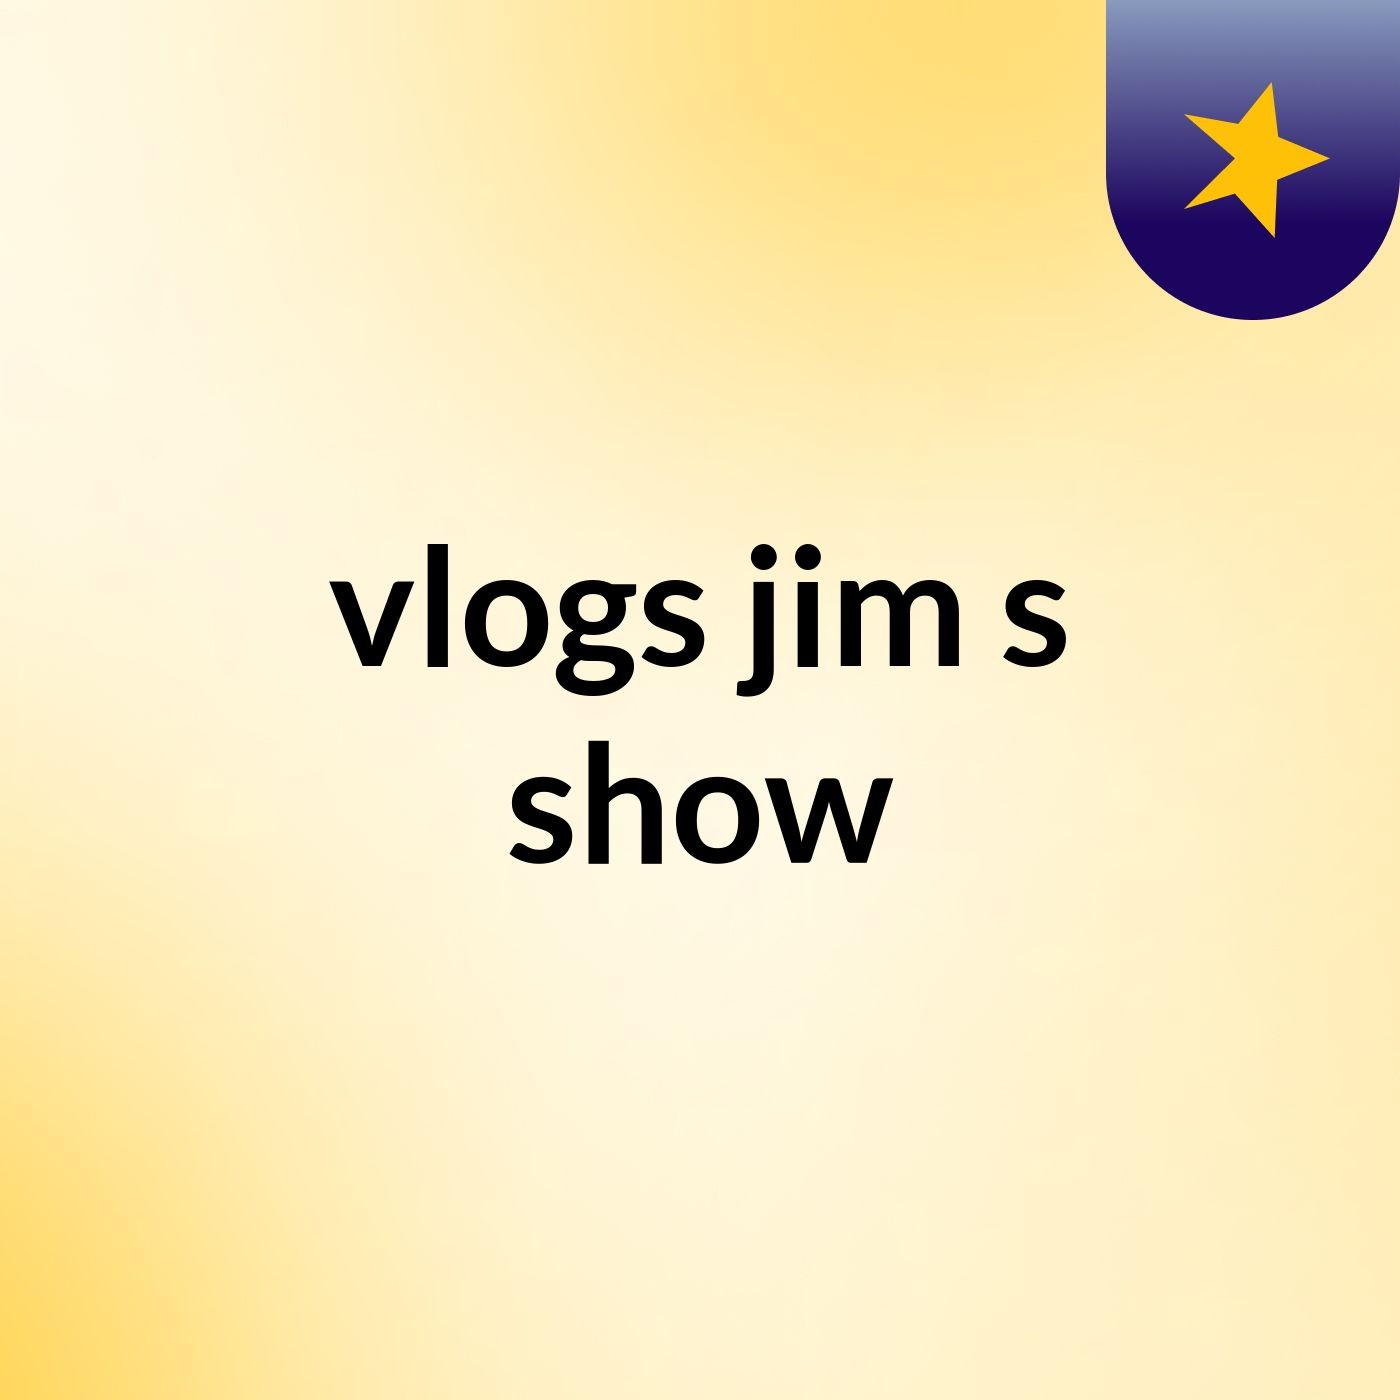 vlogs jim's show